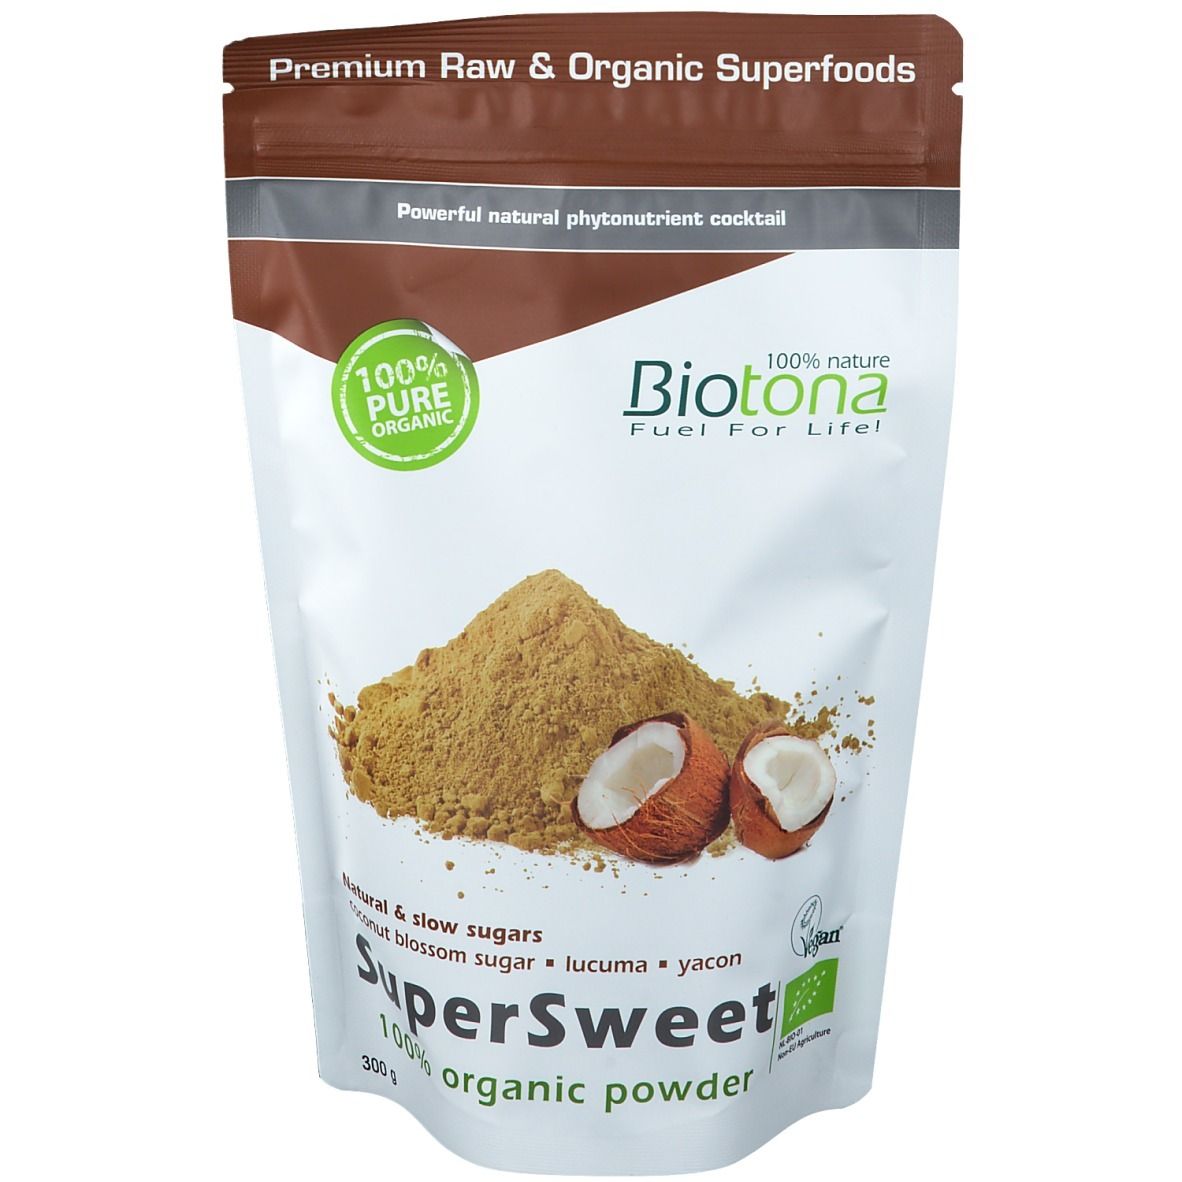 Biotona Supersweet Bio Powder